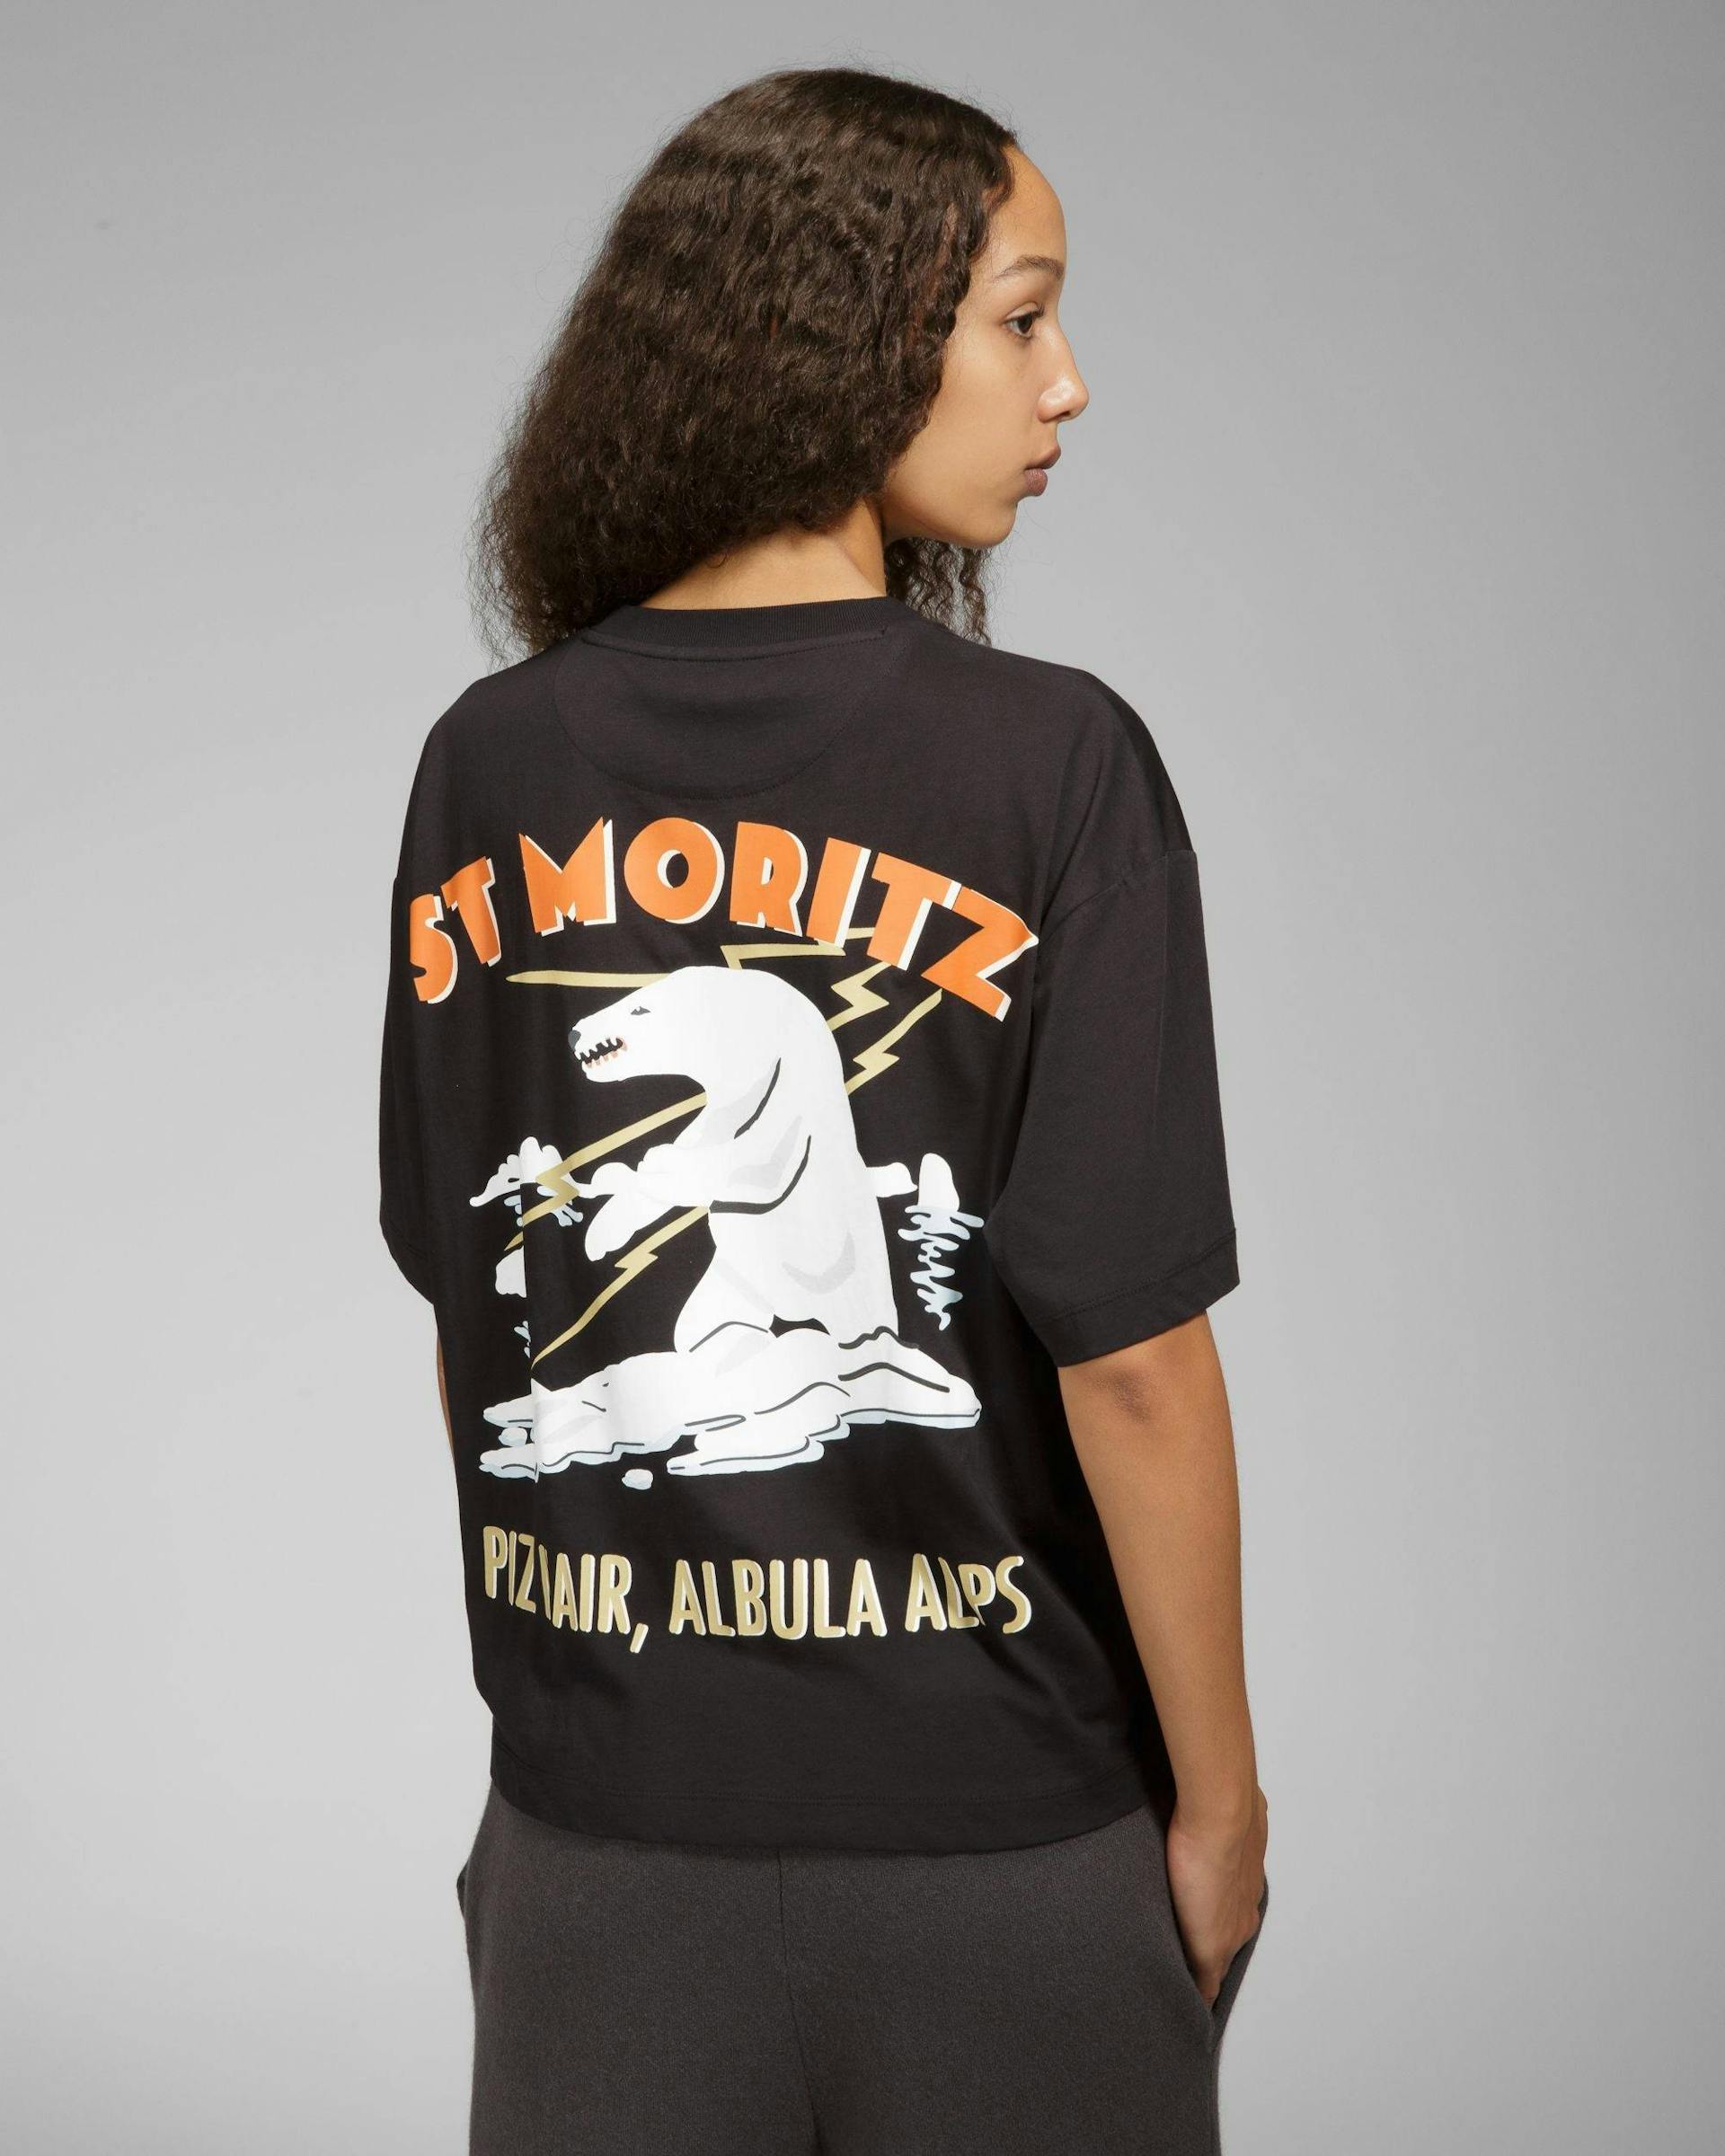 St Moritz Cotton T-Shirt In Black - Men's - Bally - 03